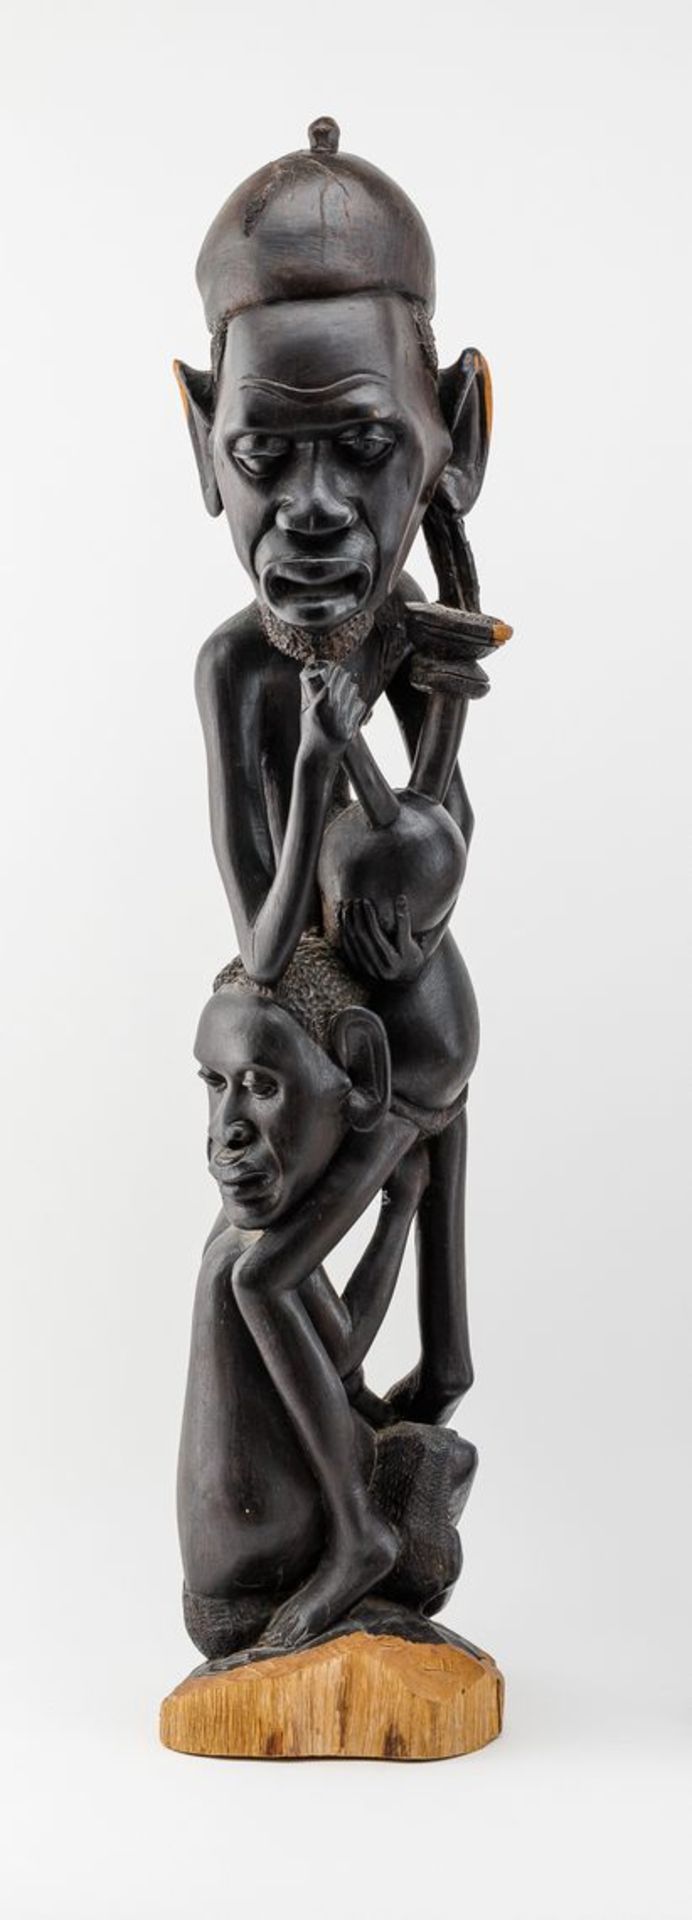 Afrikanischer BildhauerFather of the Rites. Holz, geschnitzt, dunkelbraun gefasst. Auf gewölbtem